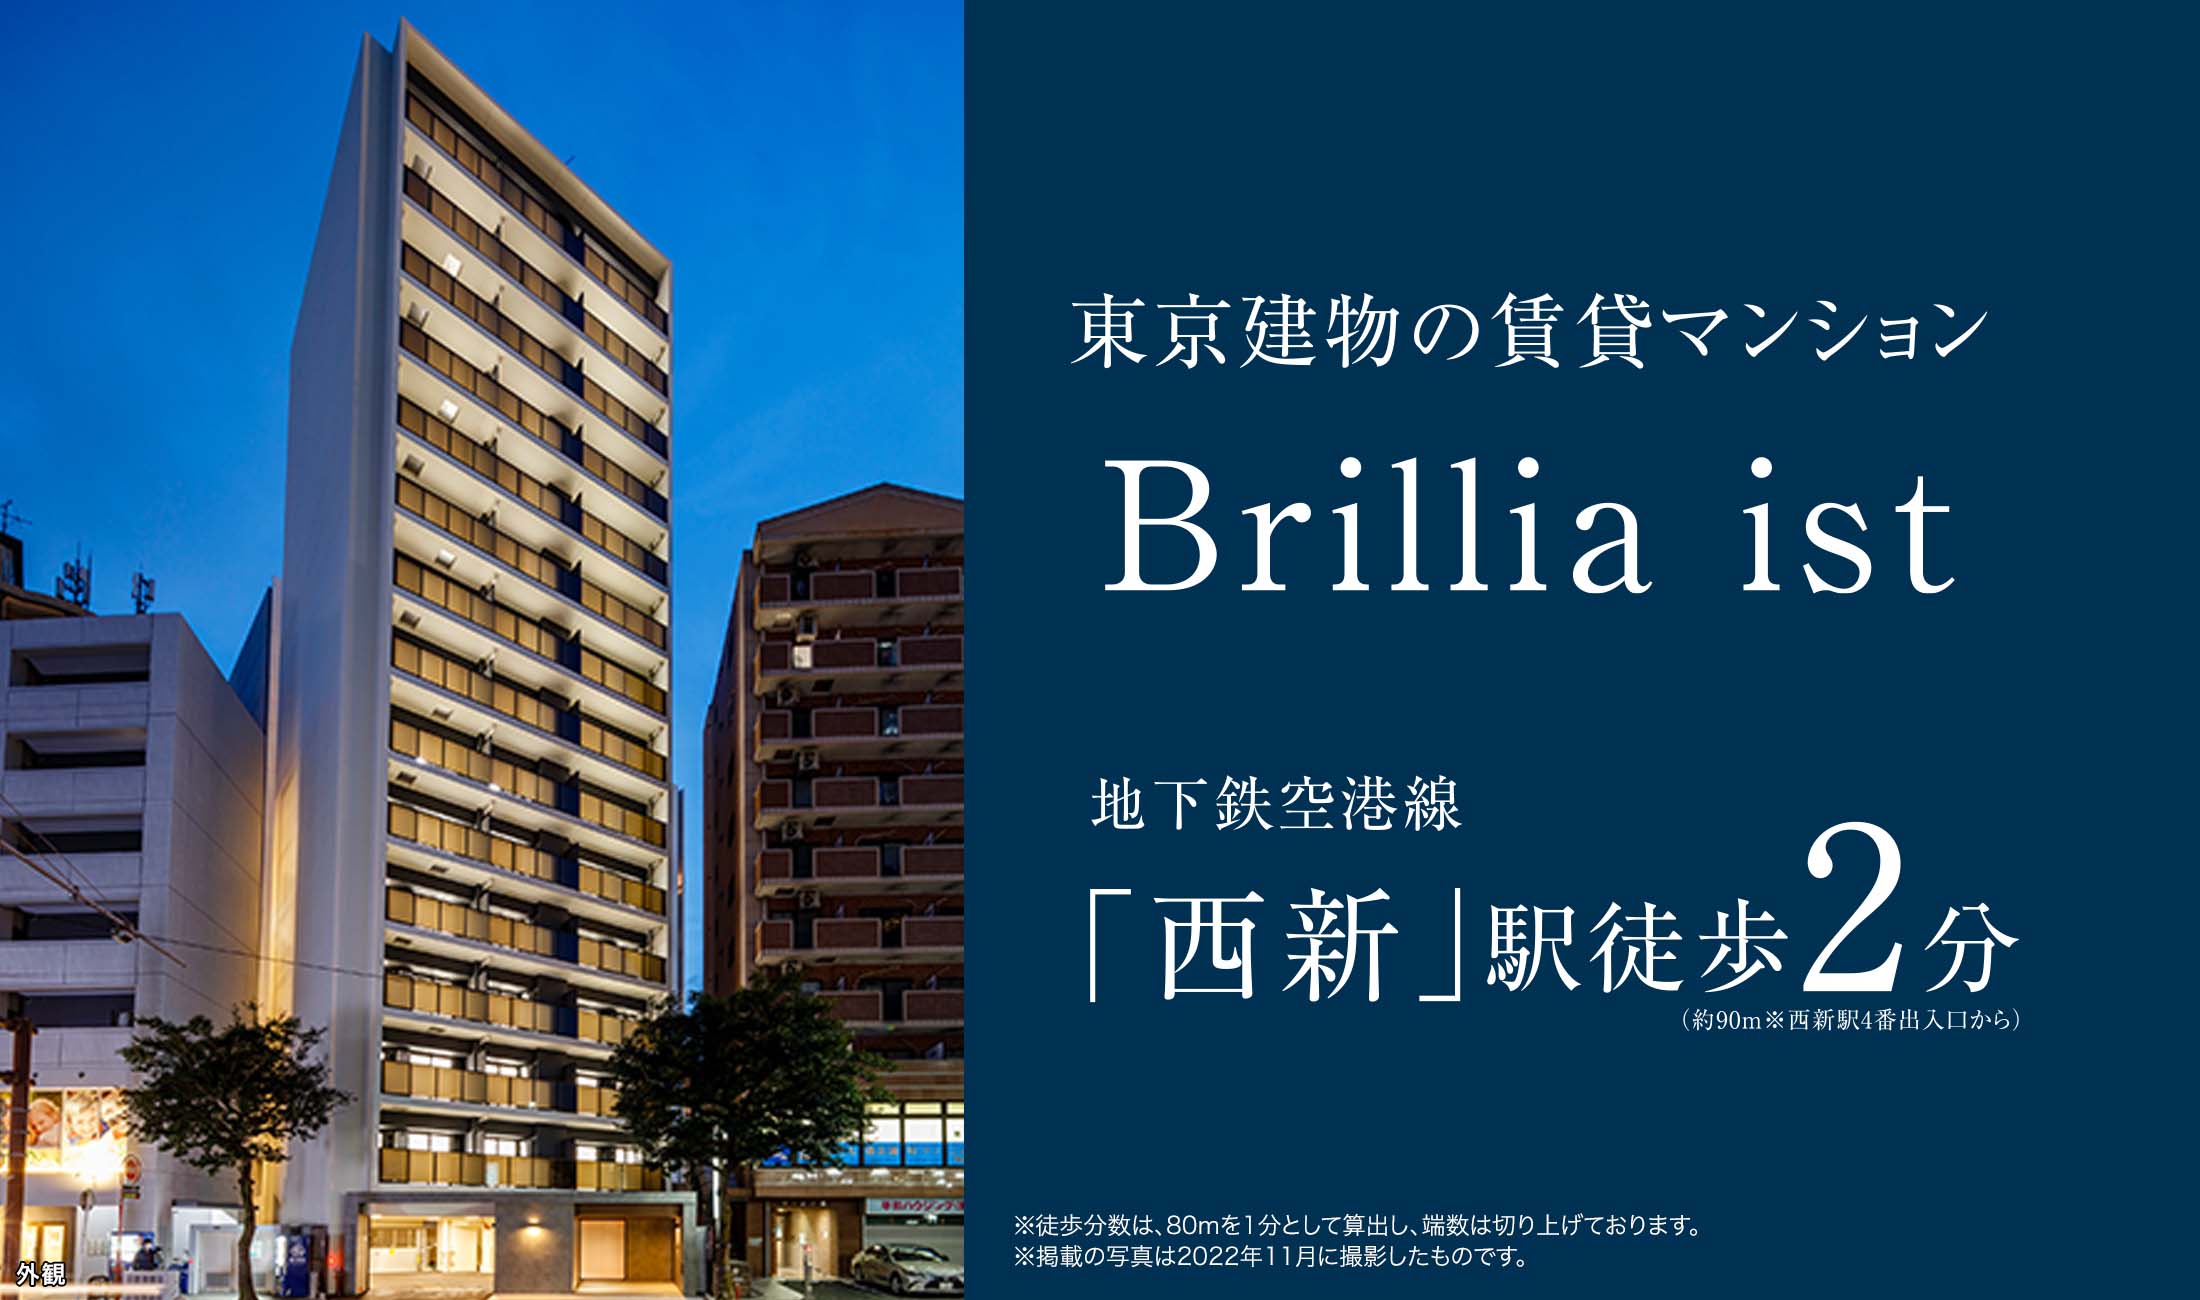 東京建物の賃貸マンション『Brillia ist 西新』